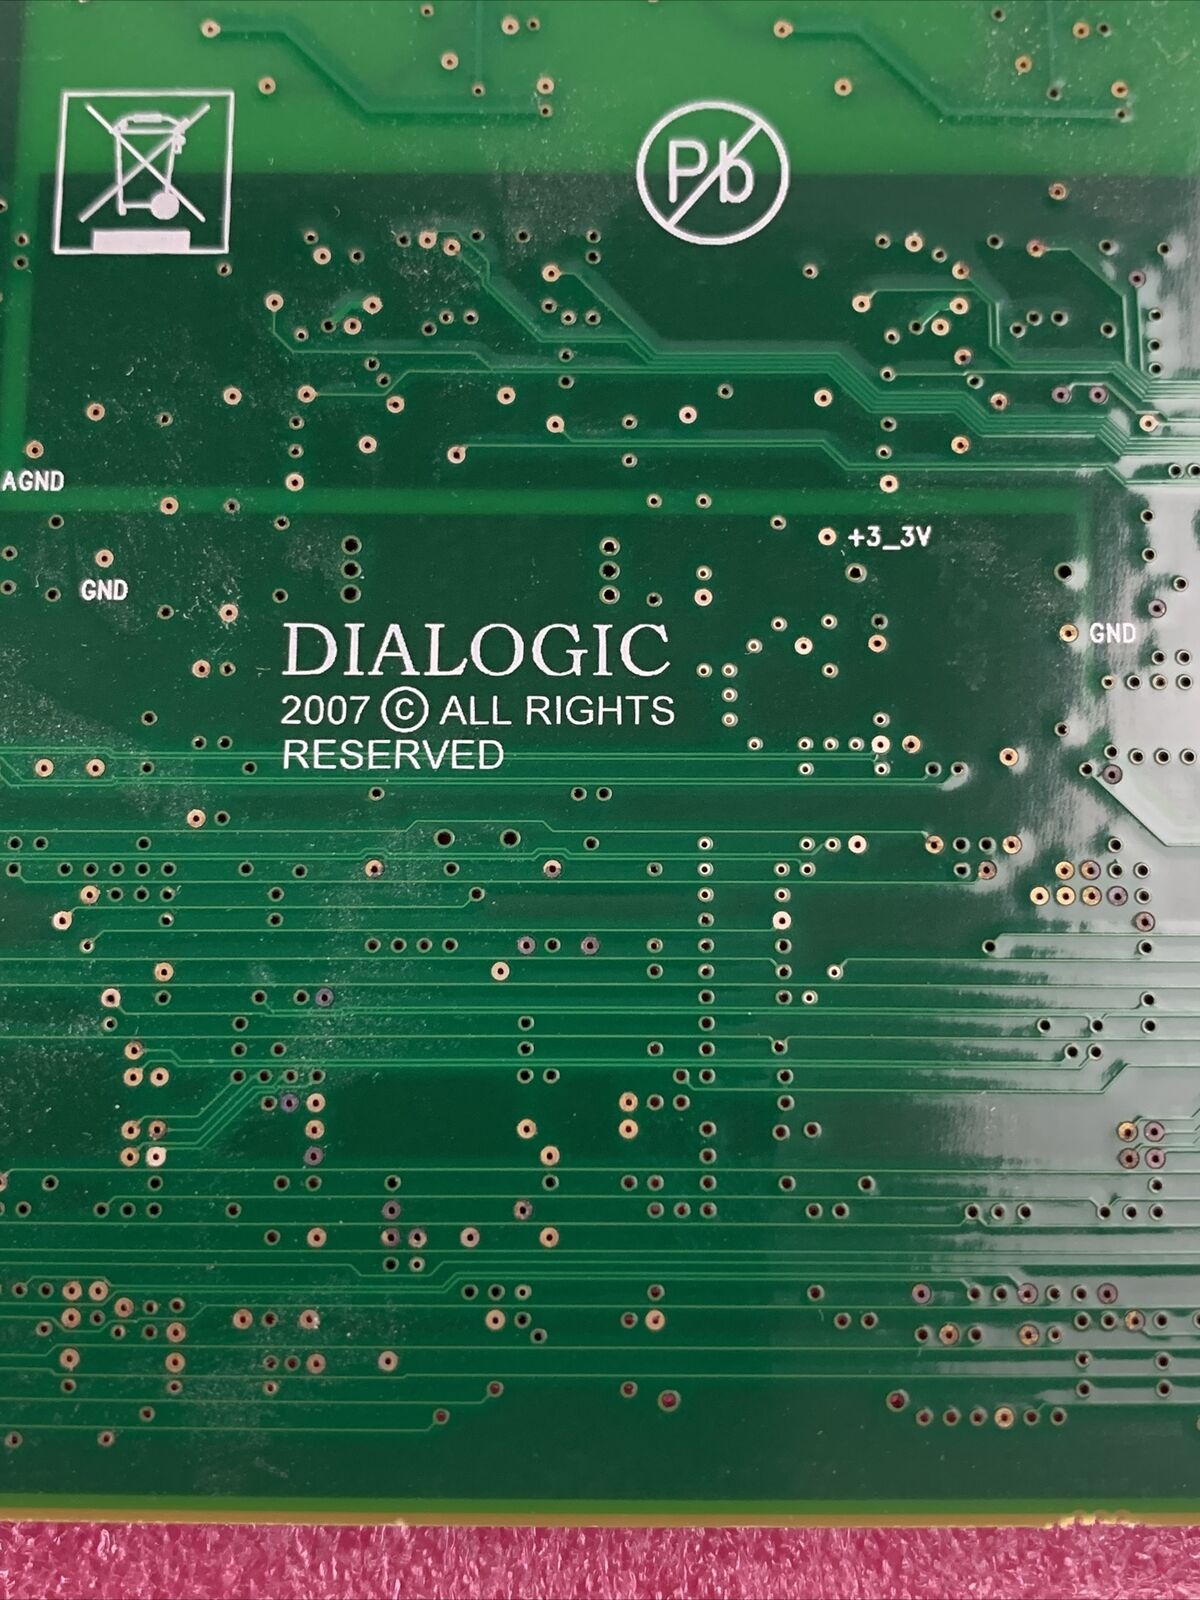 DIALOGIC BROOKTROUT TR 1034 + E4-4L FAX VOICE CARD